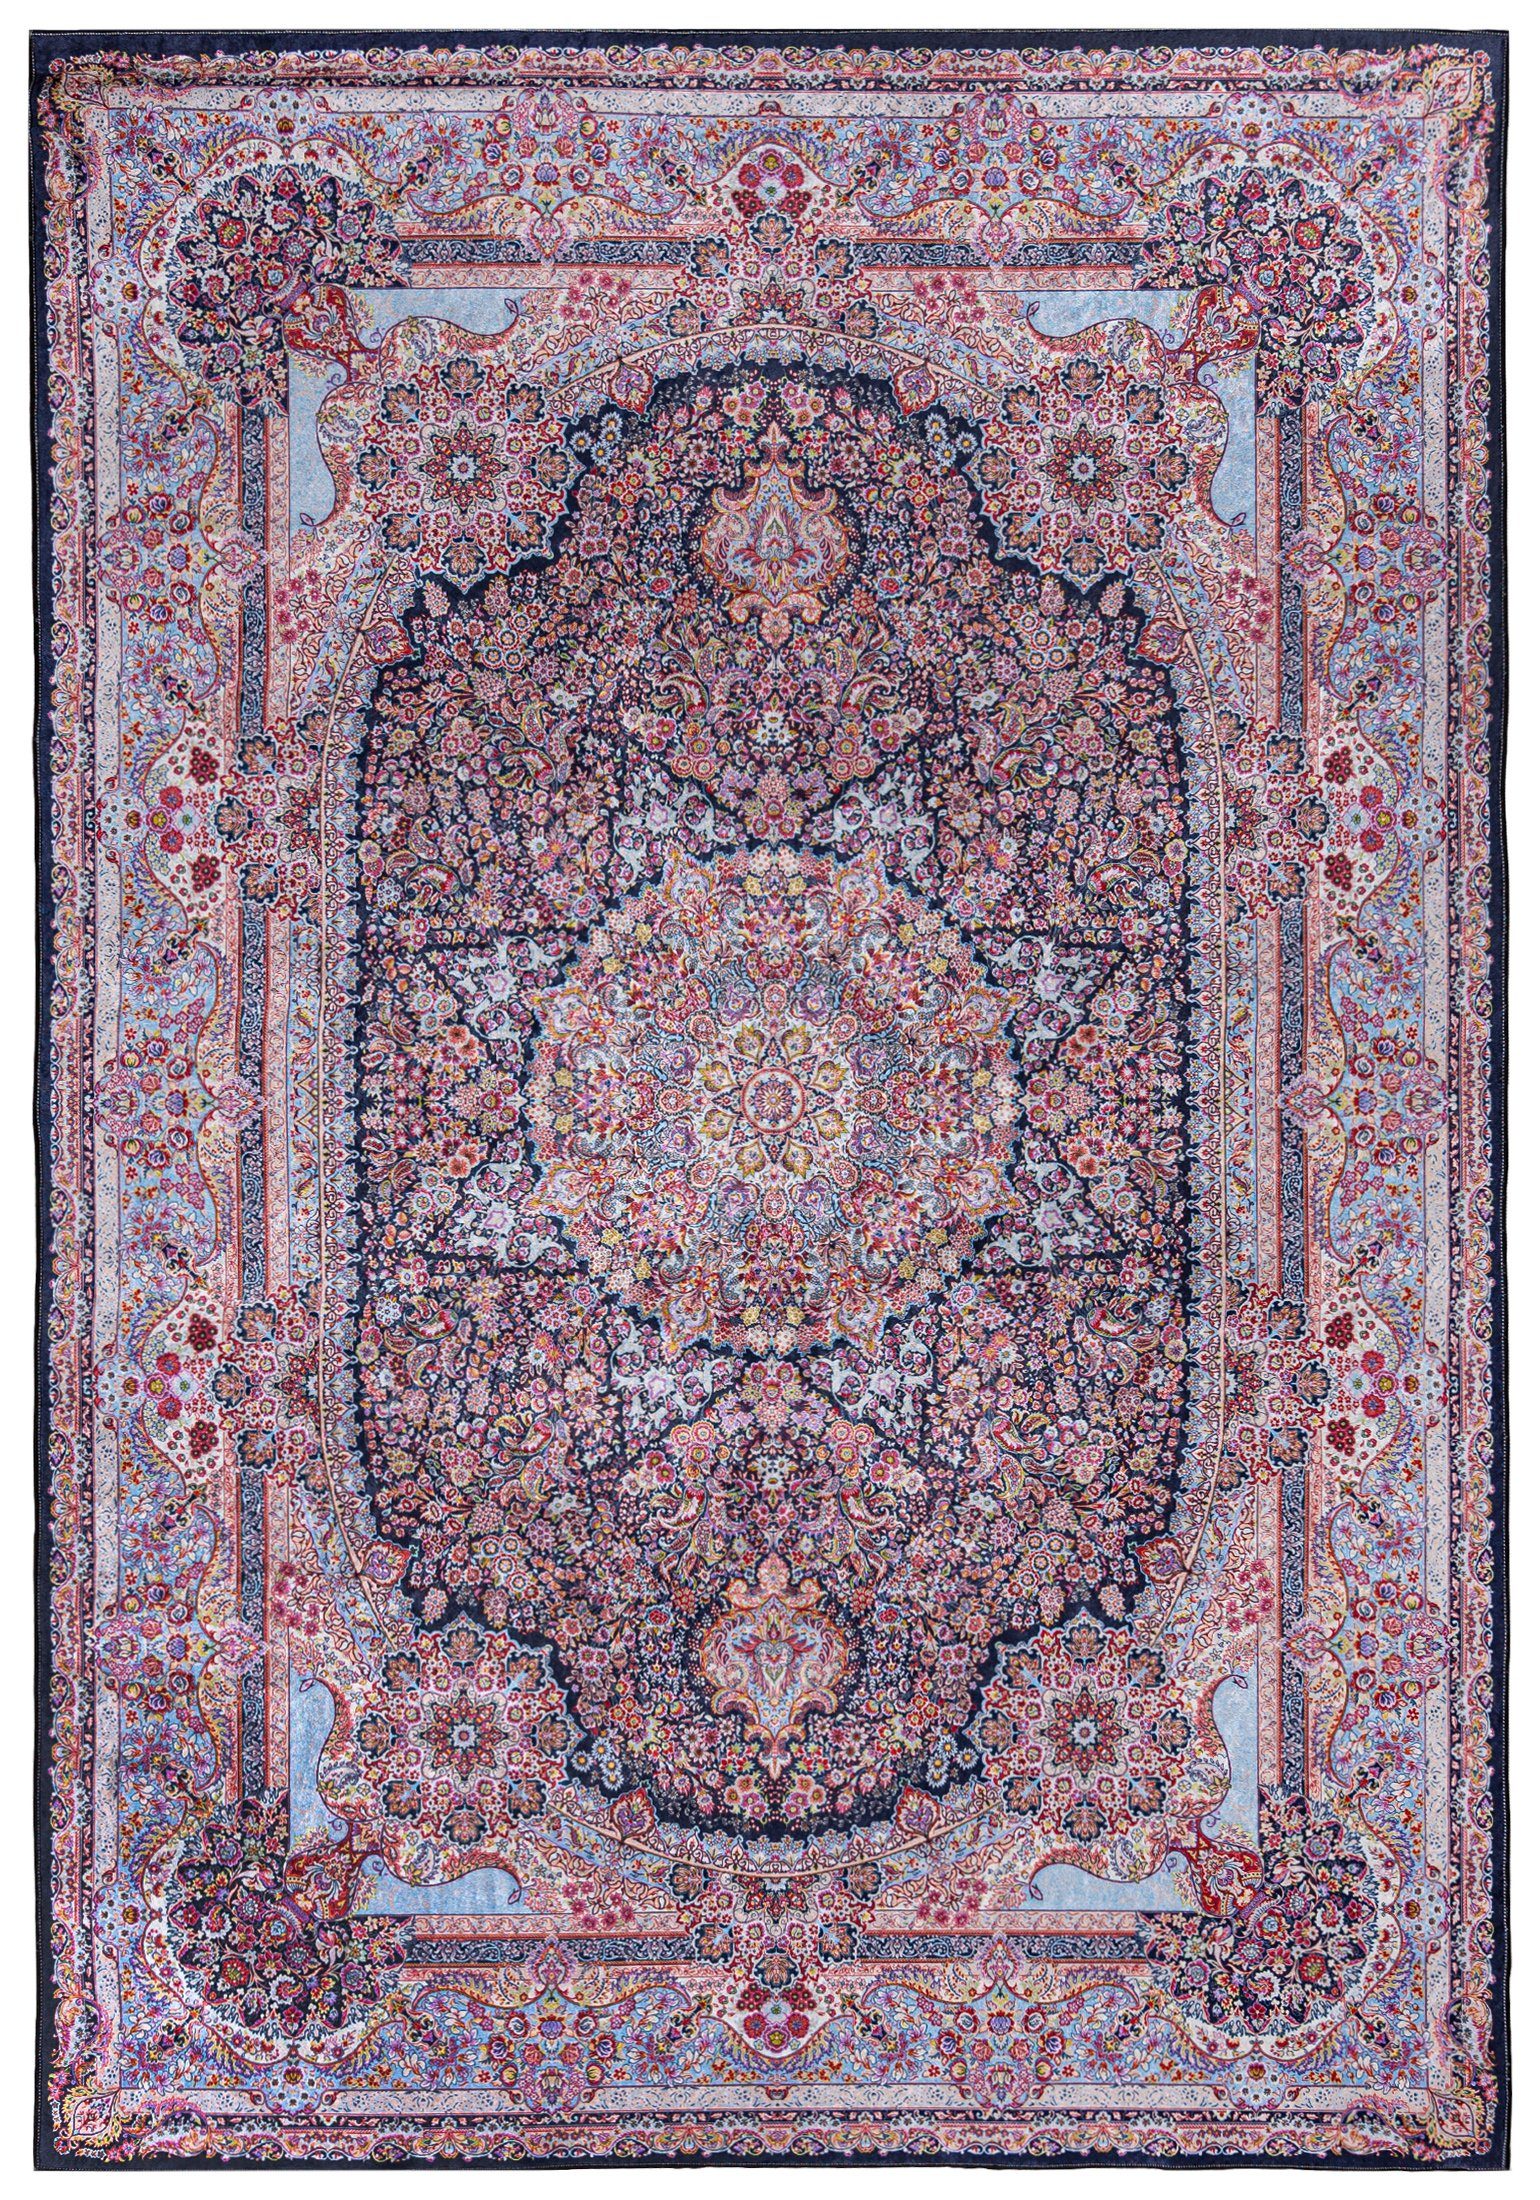 Orientteppich Orientalisch Vintage cm, Mazovia, Waschbar Teppich, Pink mm, 170 / Kurflor, in Höhe 120 Orient 5 9108 Teppich Waschmaschine, Traditioneller Rutschfest Rosa x